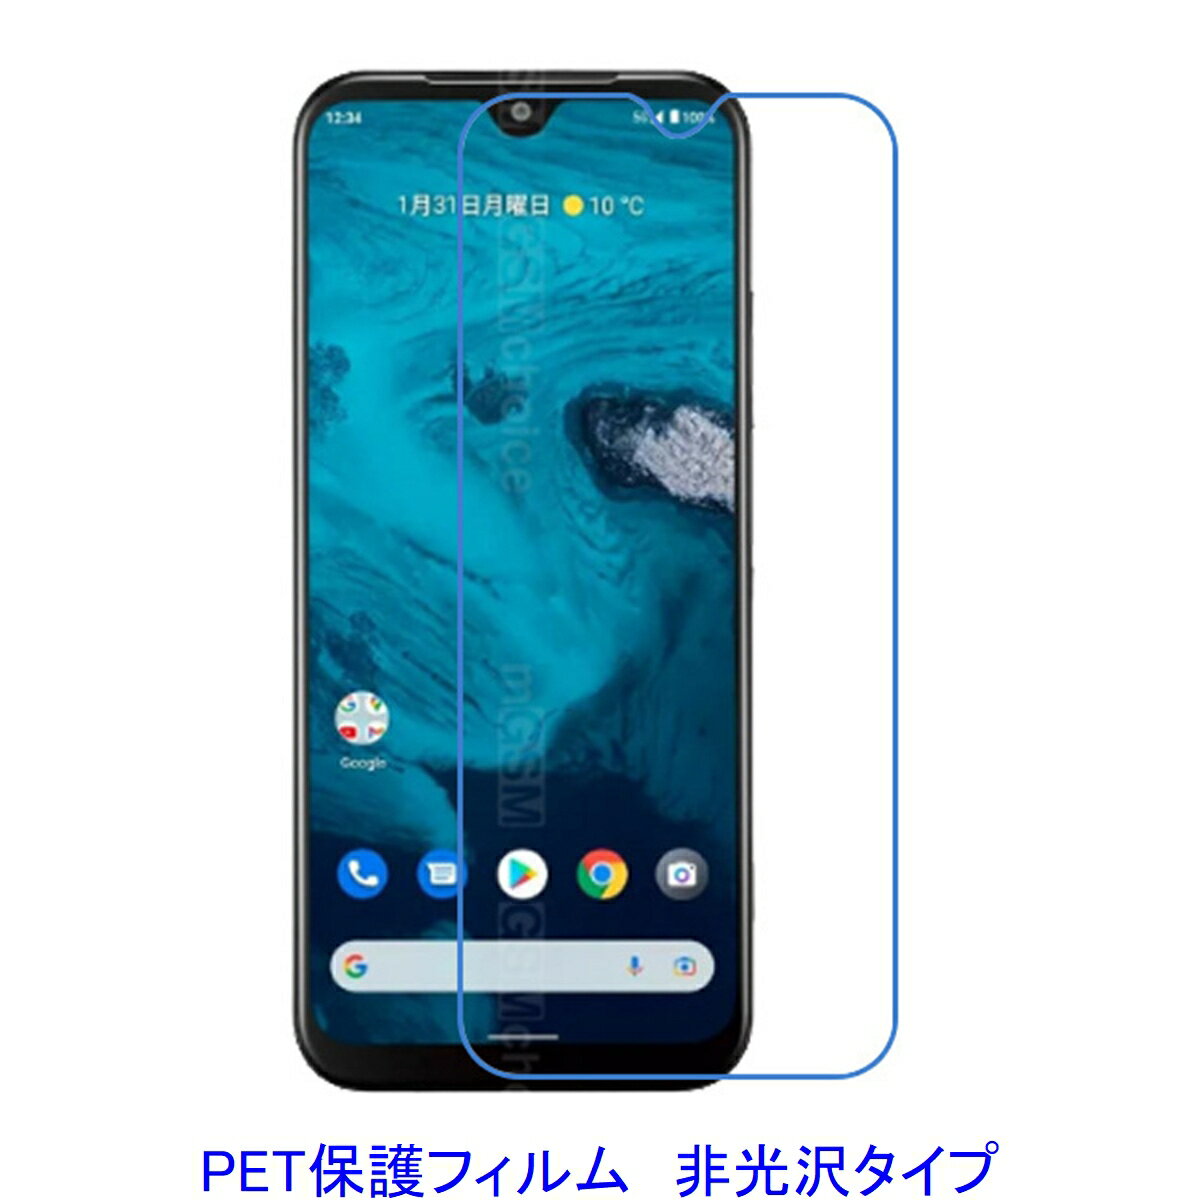 【2枚】 Kyocera Android One S9 DIGNO SANGA edition KC-S304 液晶保護フィルム 非光沢 指紋防止